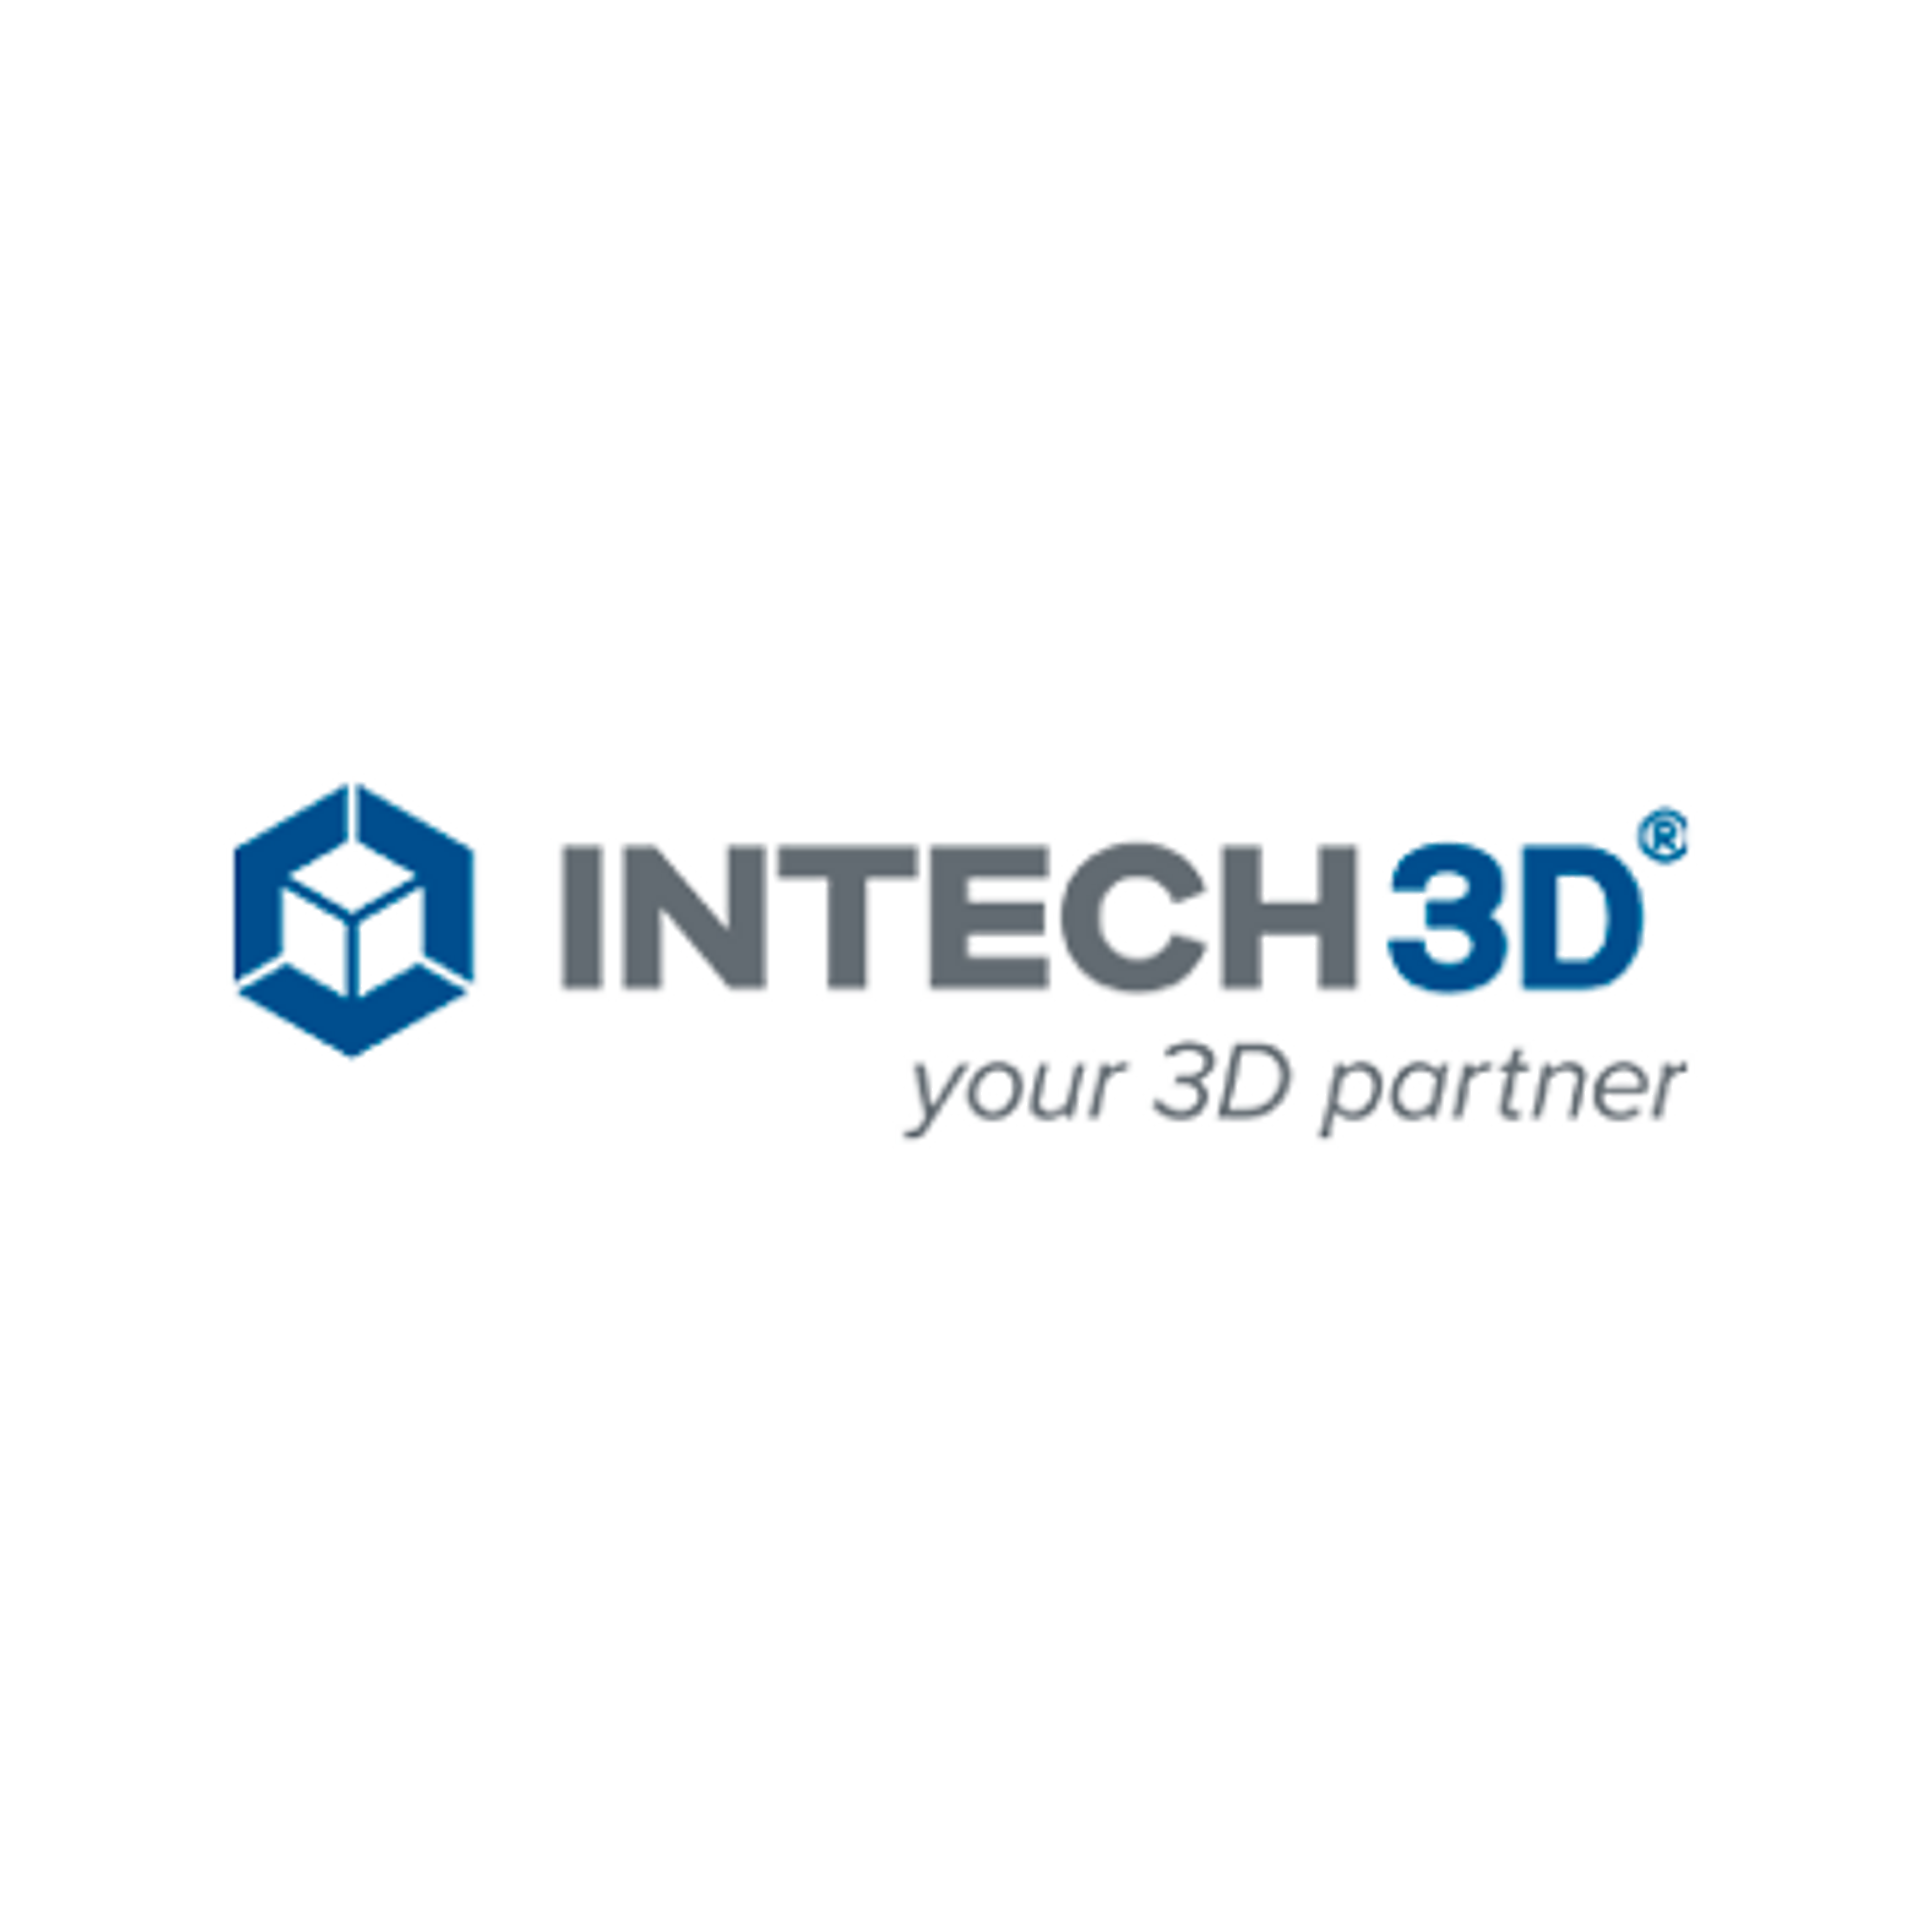 INTECH3D logo